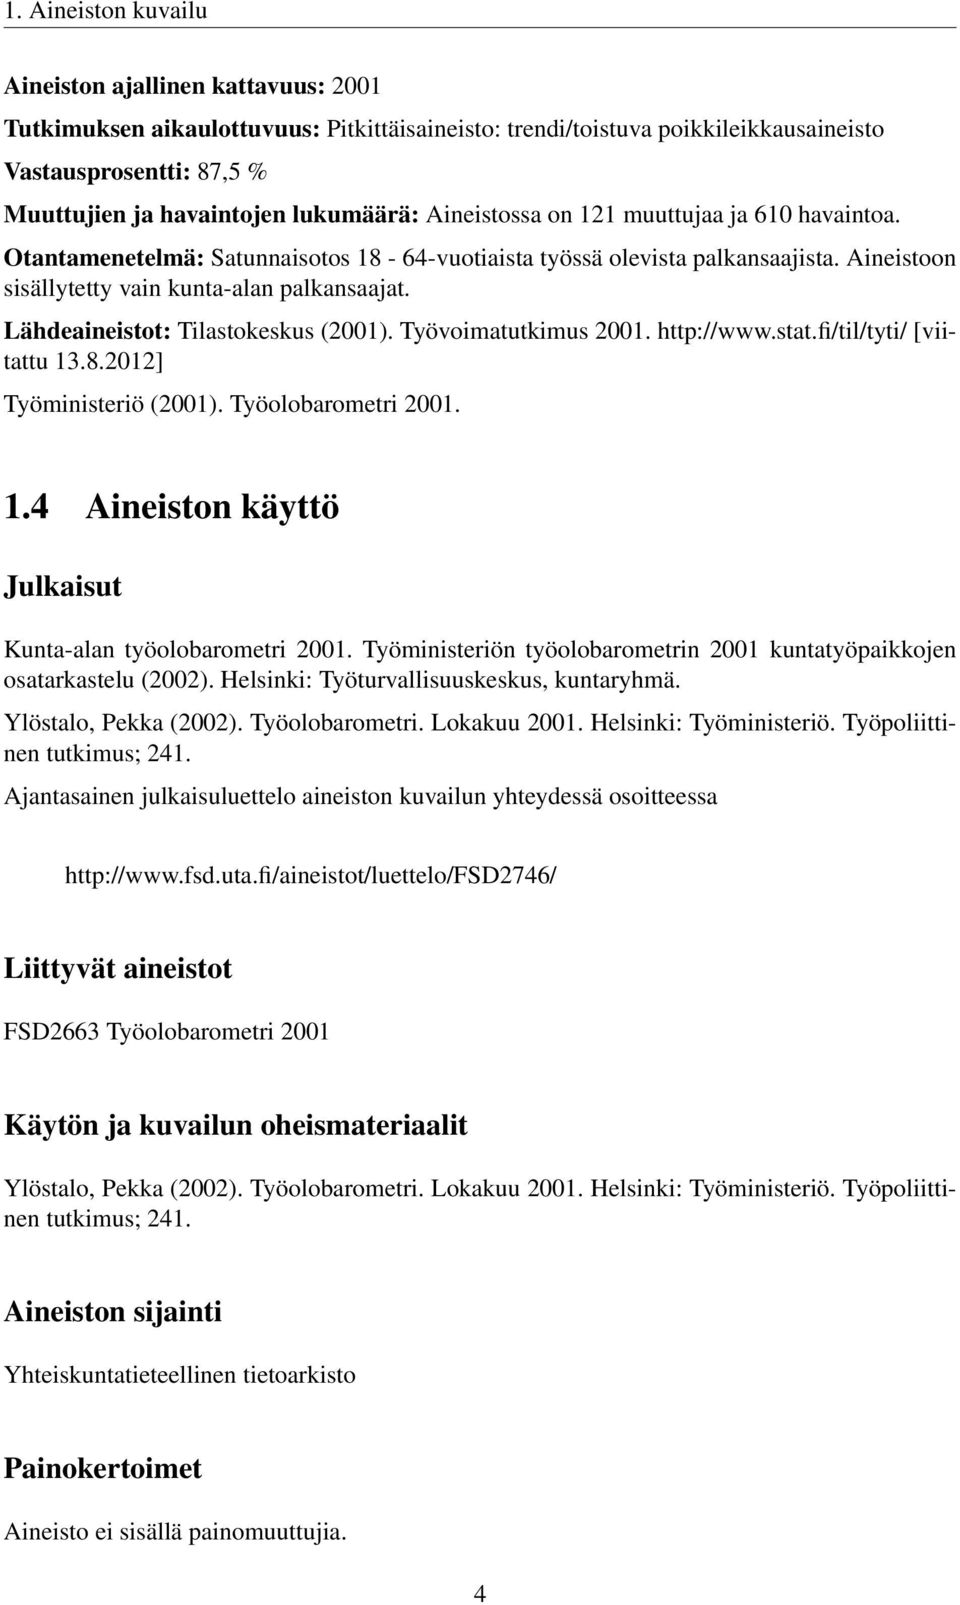 Lähdeaineistot: Tilastokeskus (2001). Työvoimatutkimus 2001. http://www.stat.fi/til/tyti/ [viitattu 13.8.2012] Työministeriö (2001). Työolobarometri 2001. 1.4 Aineiston käyttö Julkaisut Kunta-alan työolobarometri 2001.